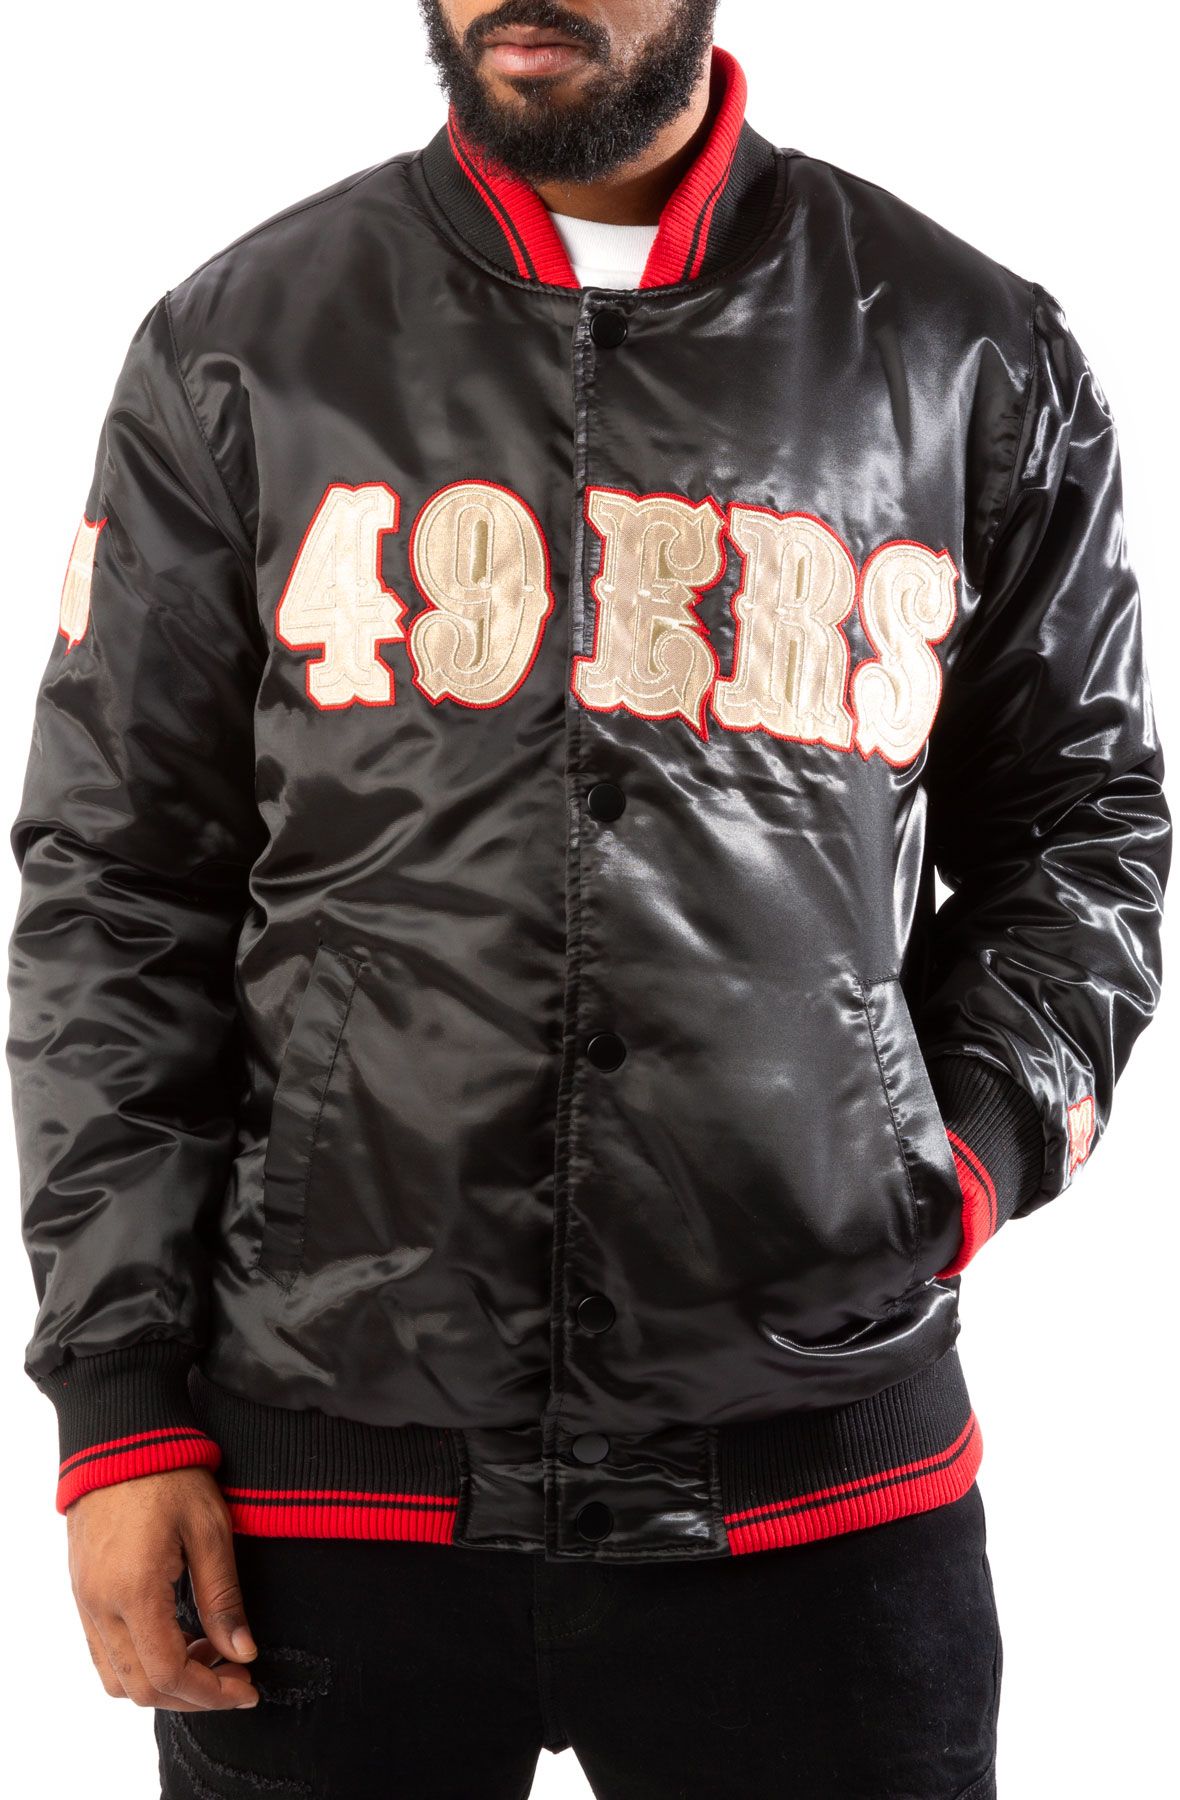 San Francisco 49ers Starter Jacket 17048 